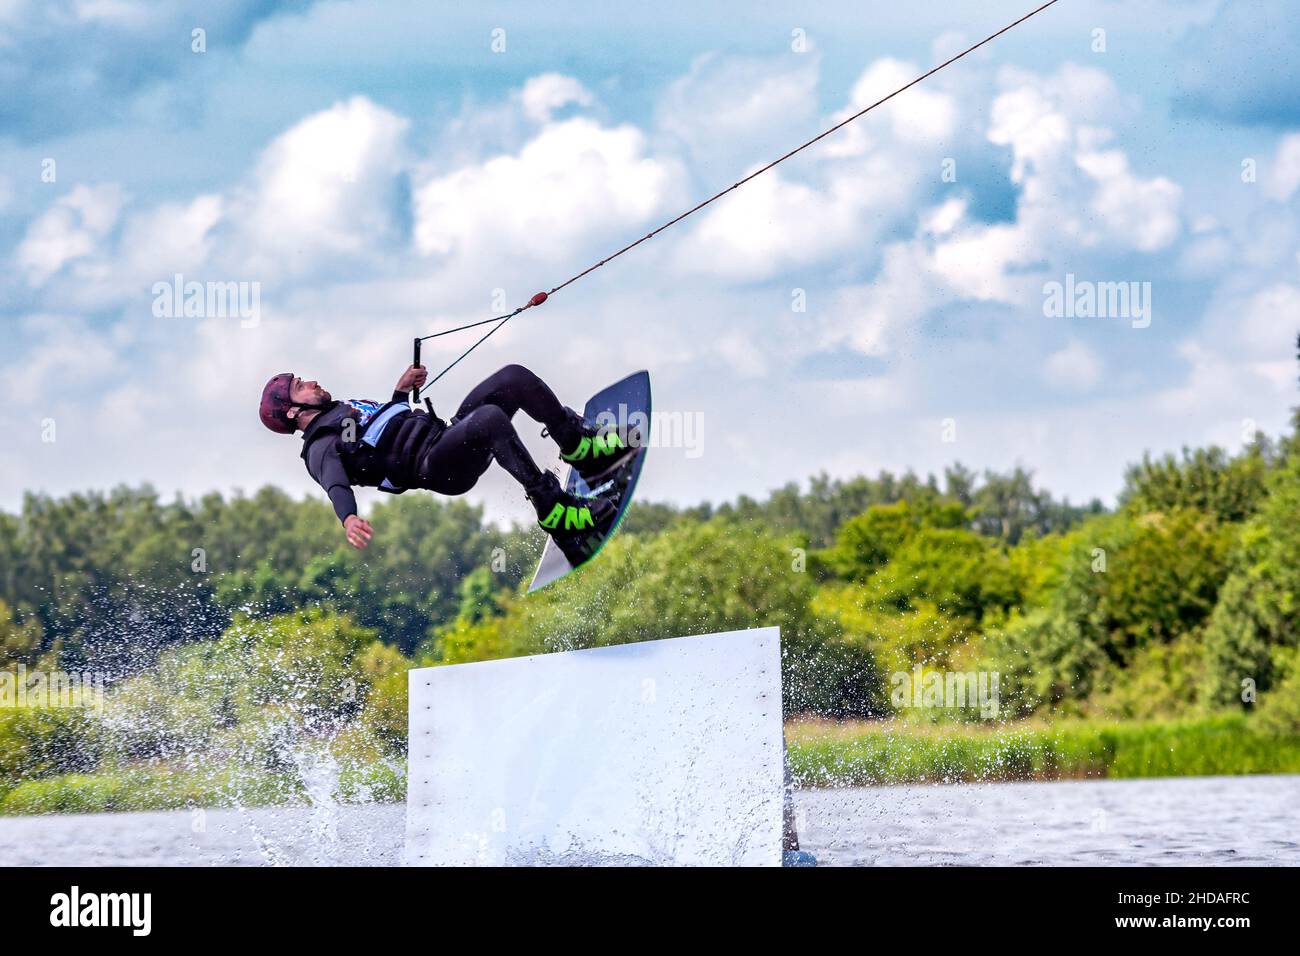 Junge aktive Profisportlerin, die auf dem Wakeboard in der Luft springt, Wassersport im Fluss Stockfoto